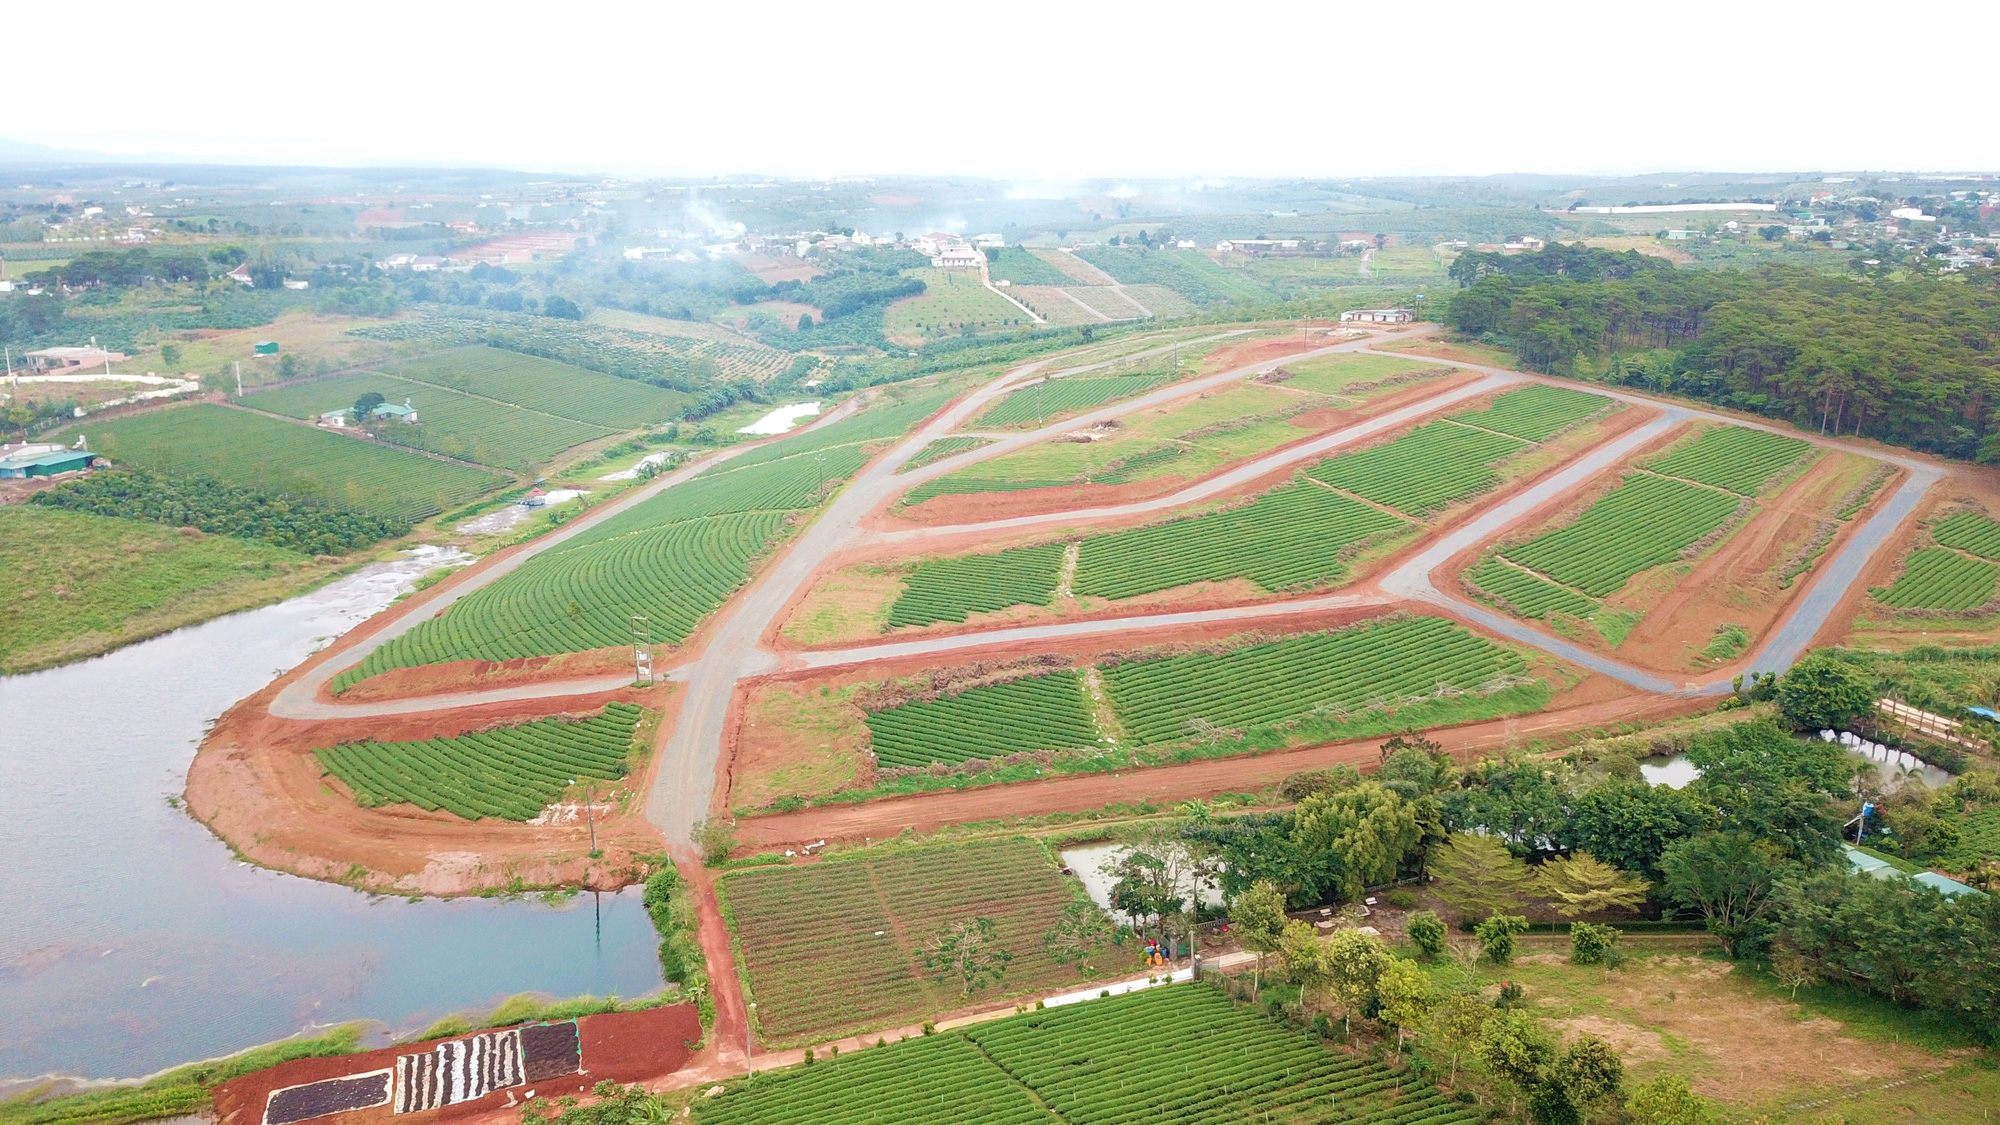 Cao tốc Tân Phú - Bảo Lộc khiến giá đất tại Bảo Lộc tăng cao, dẫn đến nhiều sai phạm, buông lỏng quản lý - Ảnh 2.